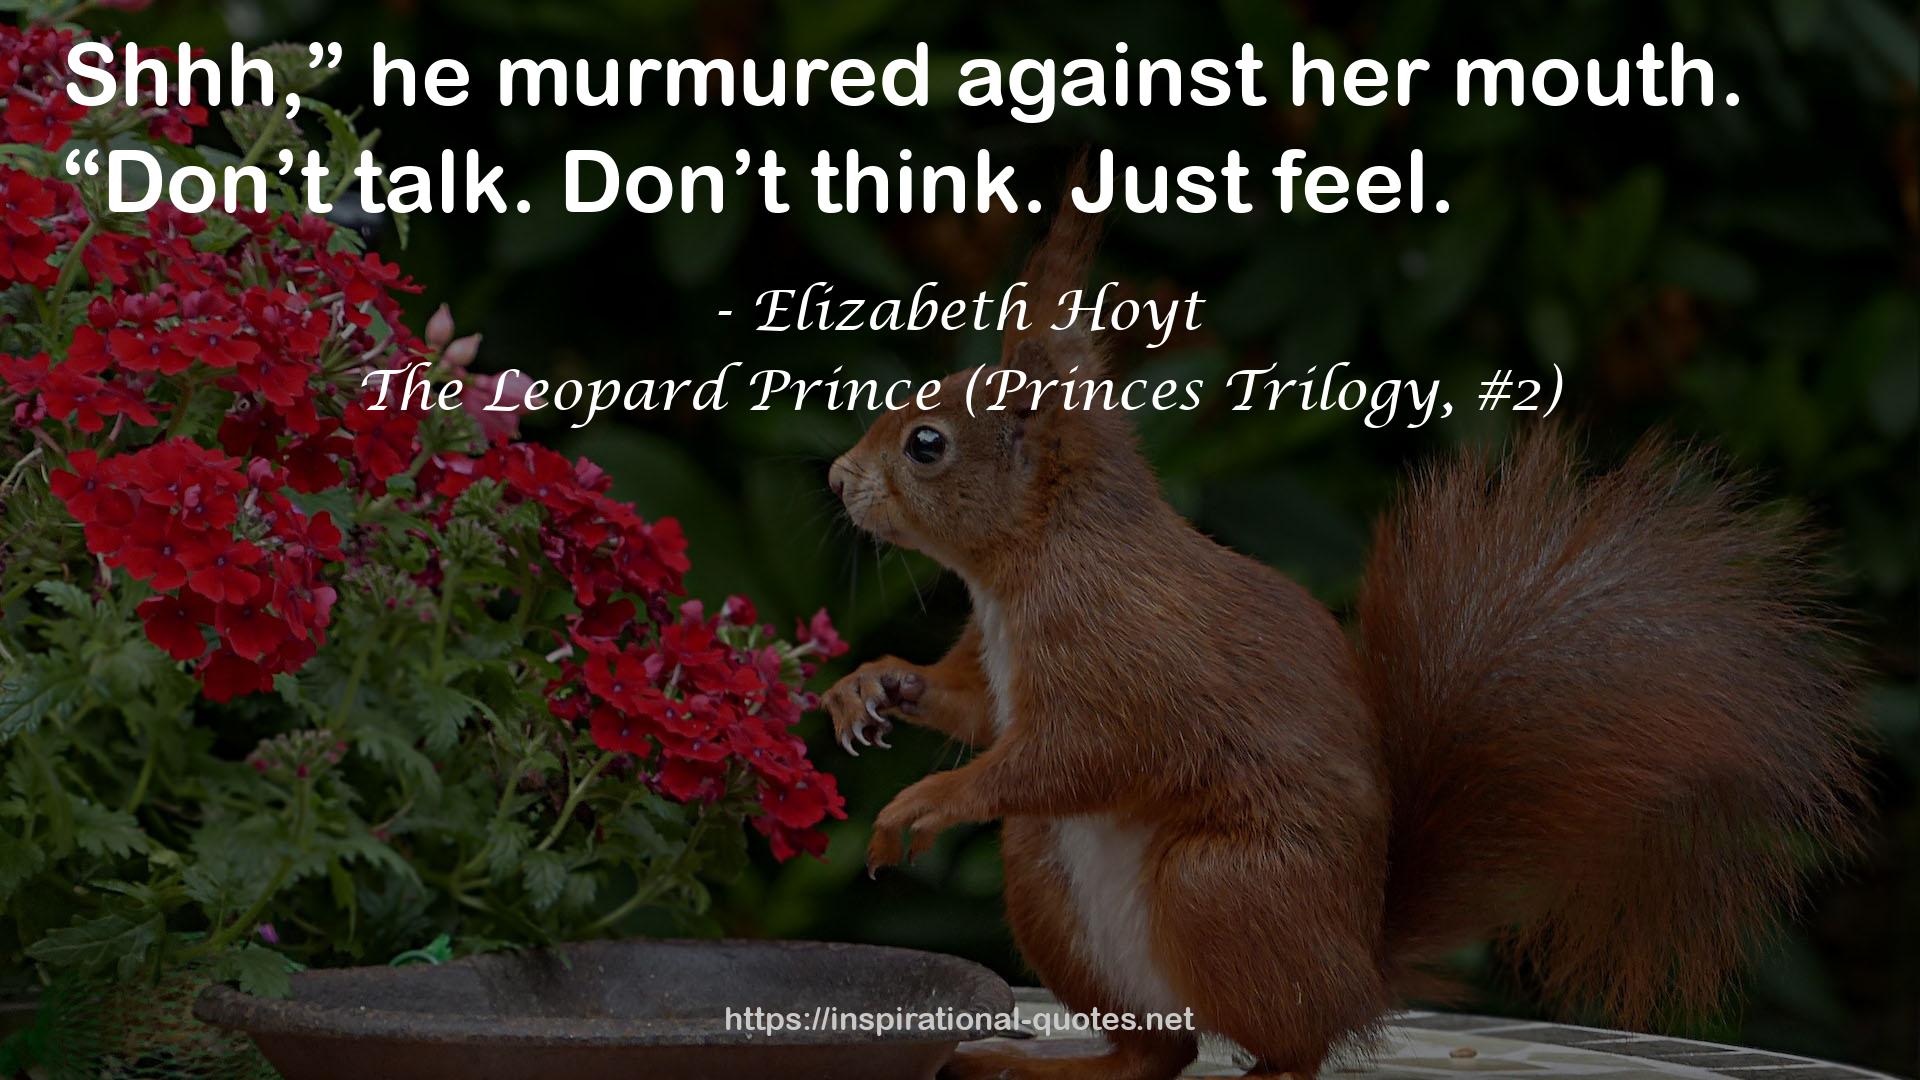 The Leopard Prince (Princes Trilogy, #2) QUOTES